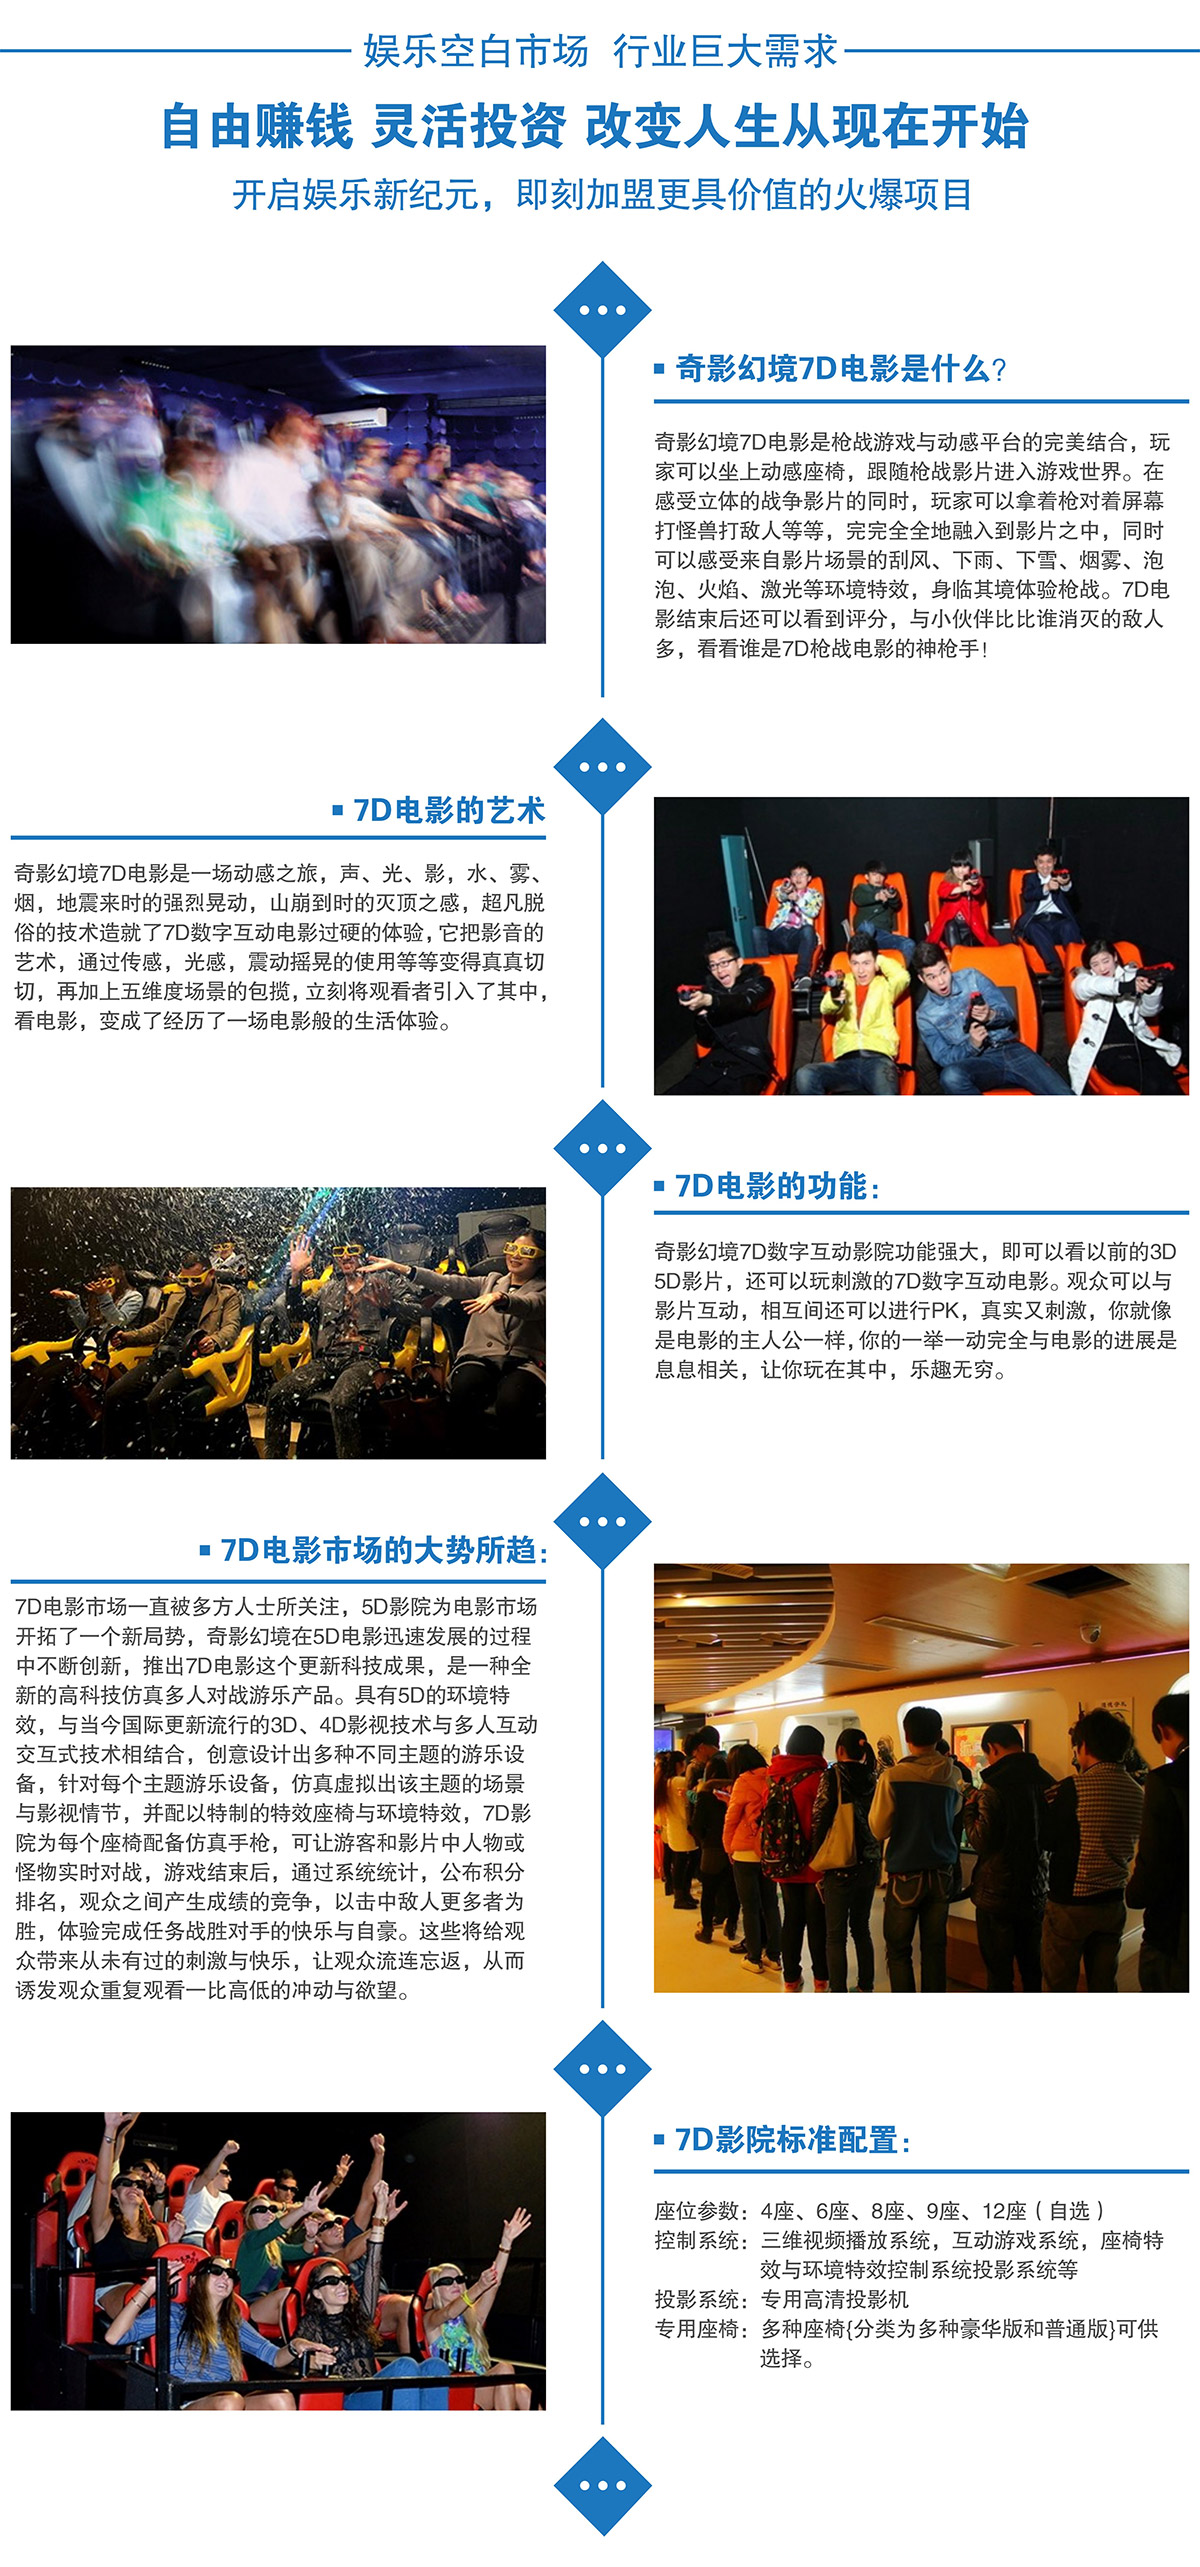 四川娱乐空白市场7D电影行业巨大需求.jpg